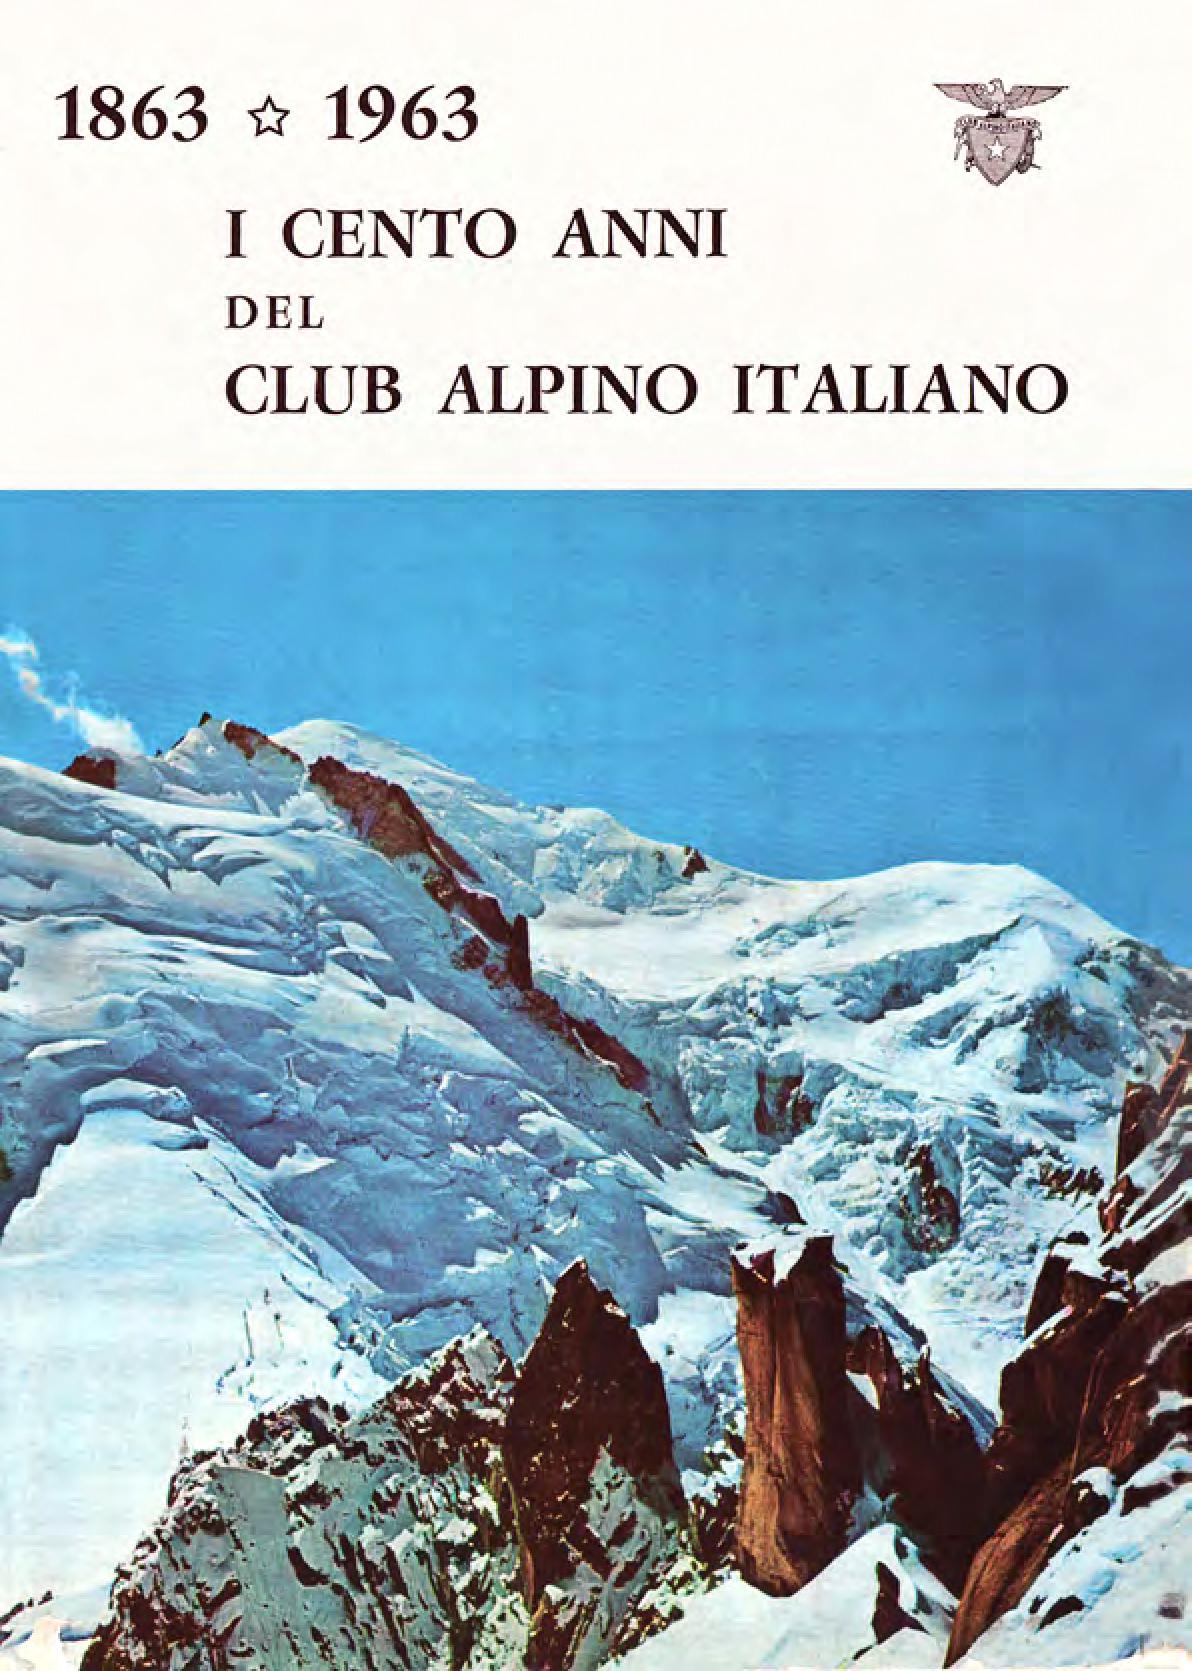 Il volume “1863-1963 i Cento anni del Club alpino italiano” scaricabile sul sito